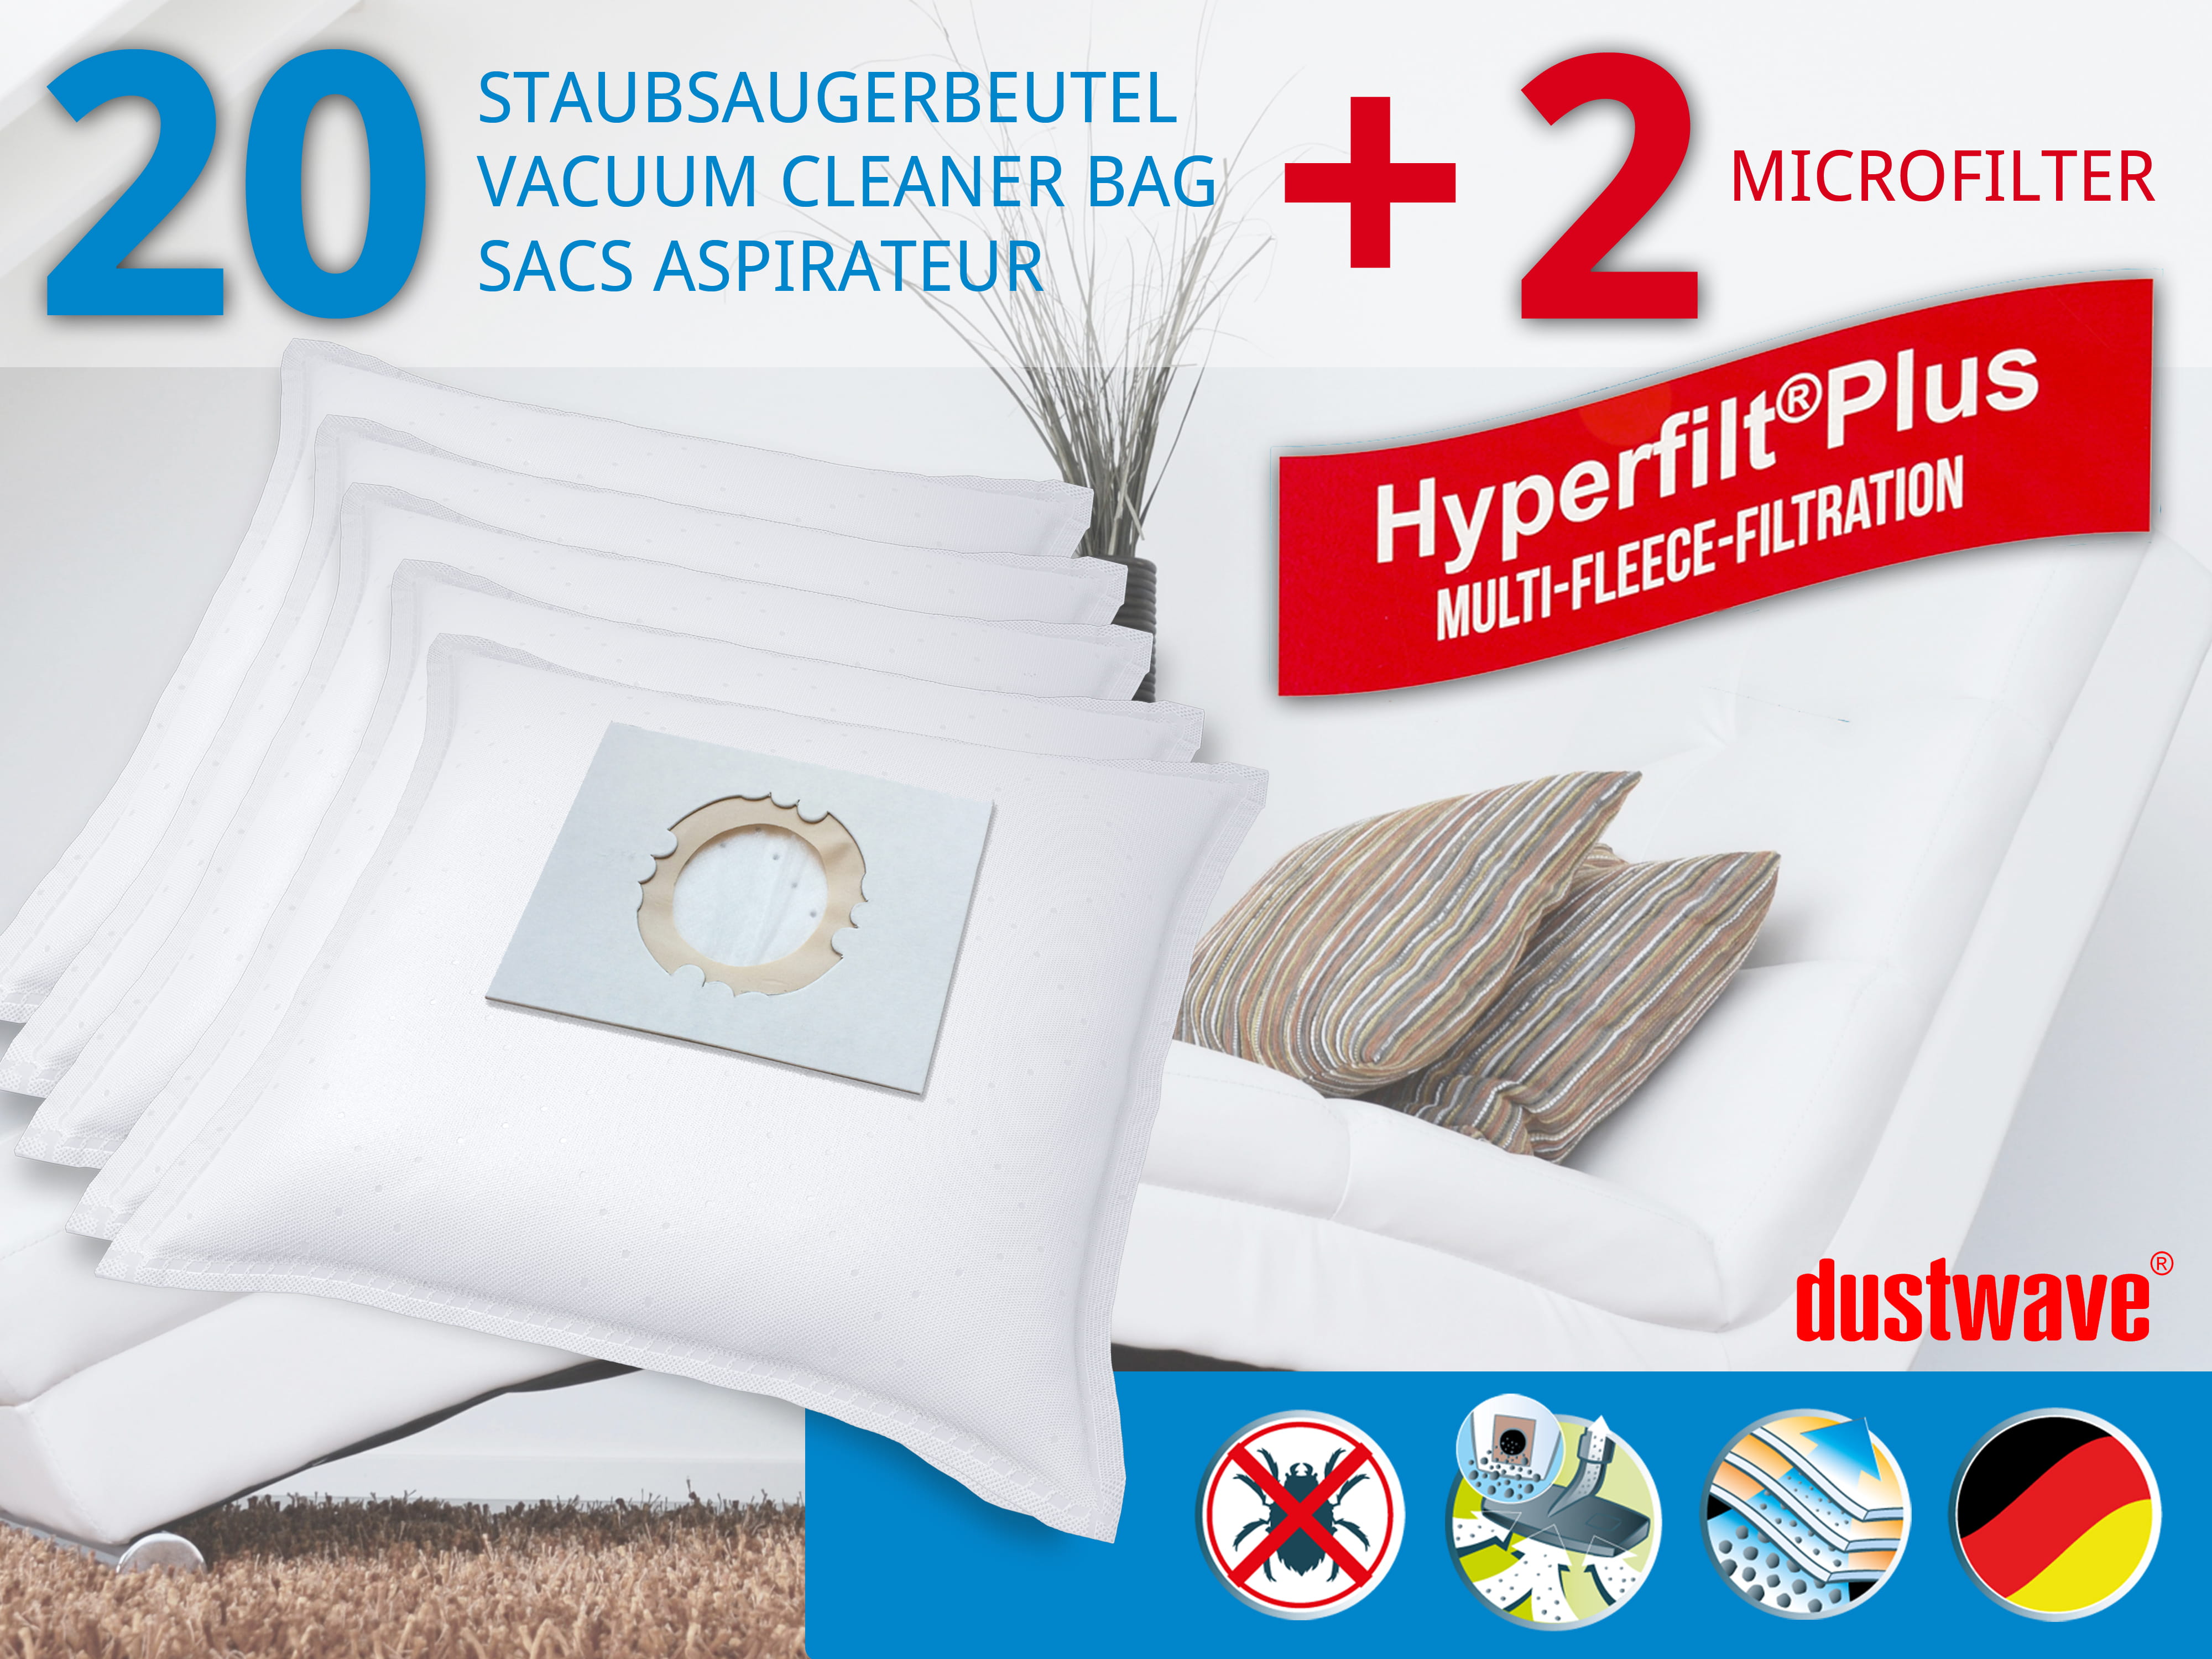 Dustwave® 20 Staubsaugerbeutel für Hoover SCST332E011 - hocheffizient, mehrlagiges Mikrovlies mit Hygieneverschluss - Made in Germany